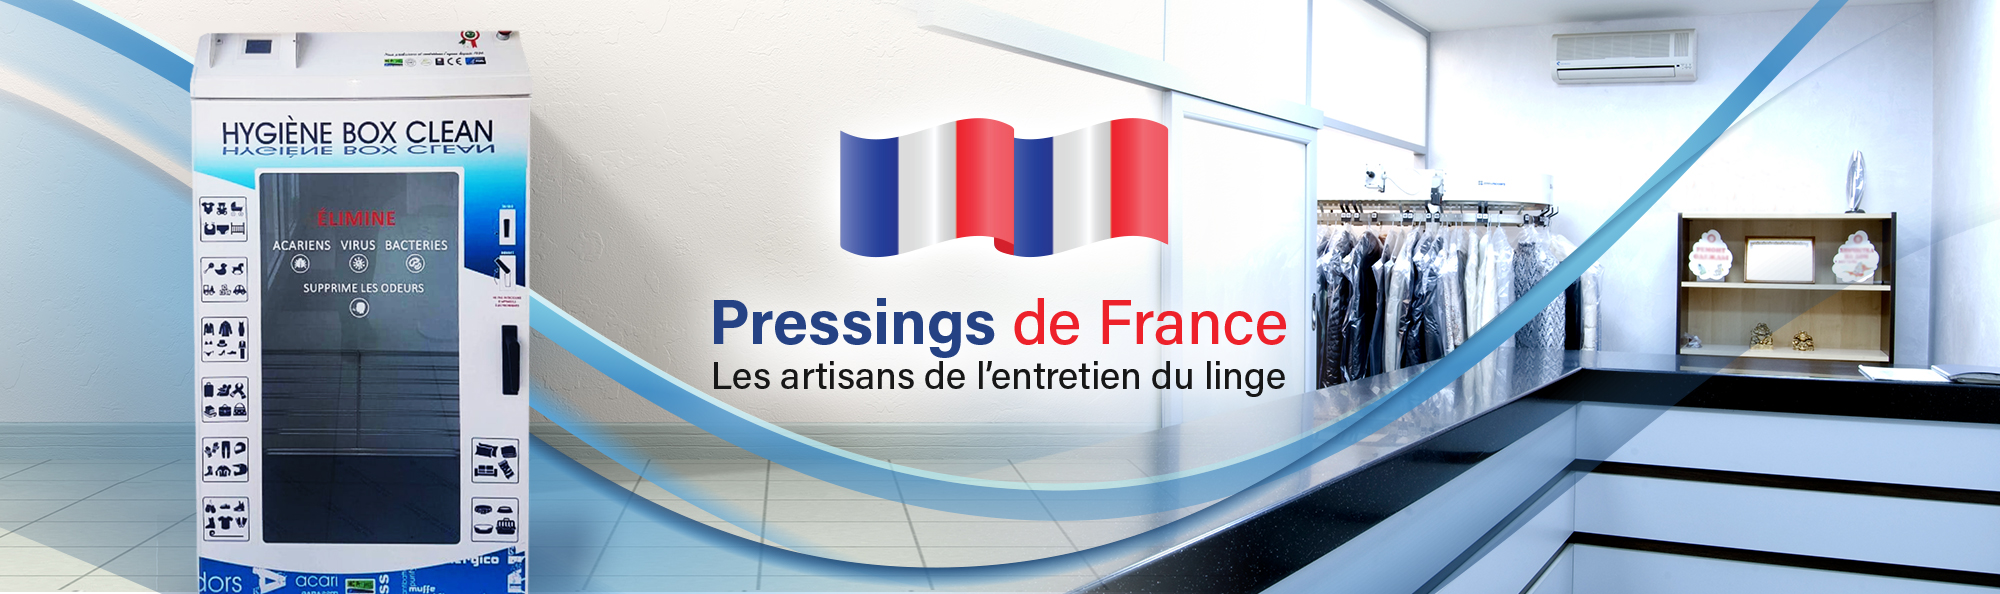 https://pressingsdefrance.fr/wp-content/uploads/2022/04/PRESSING-DE-FRANCE-1.jpg